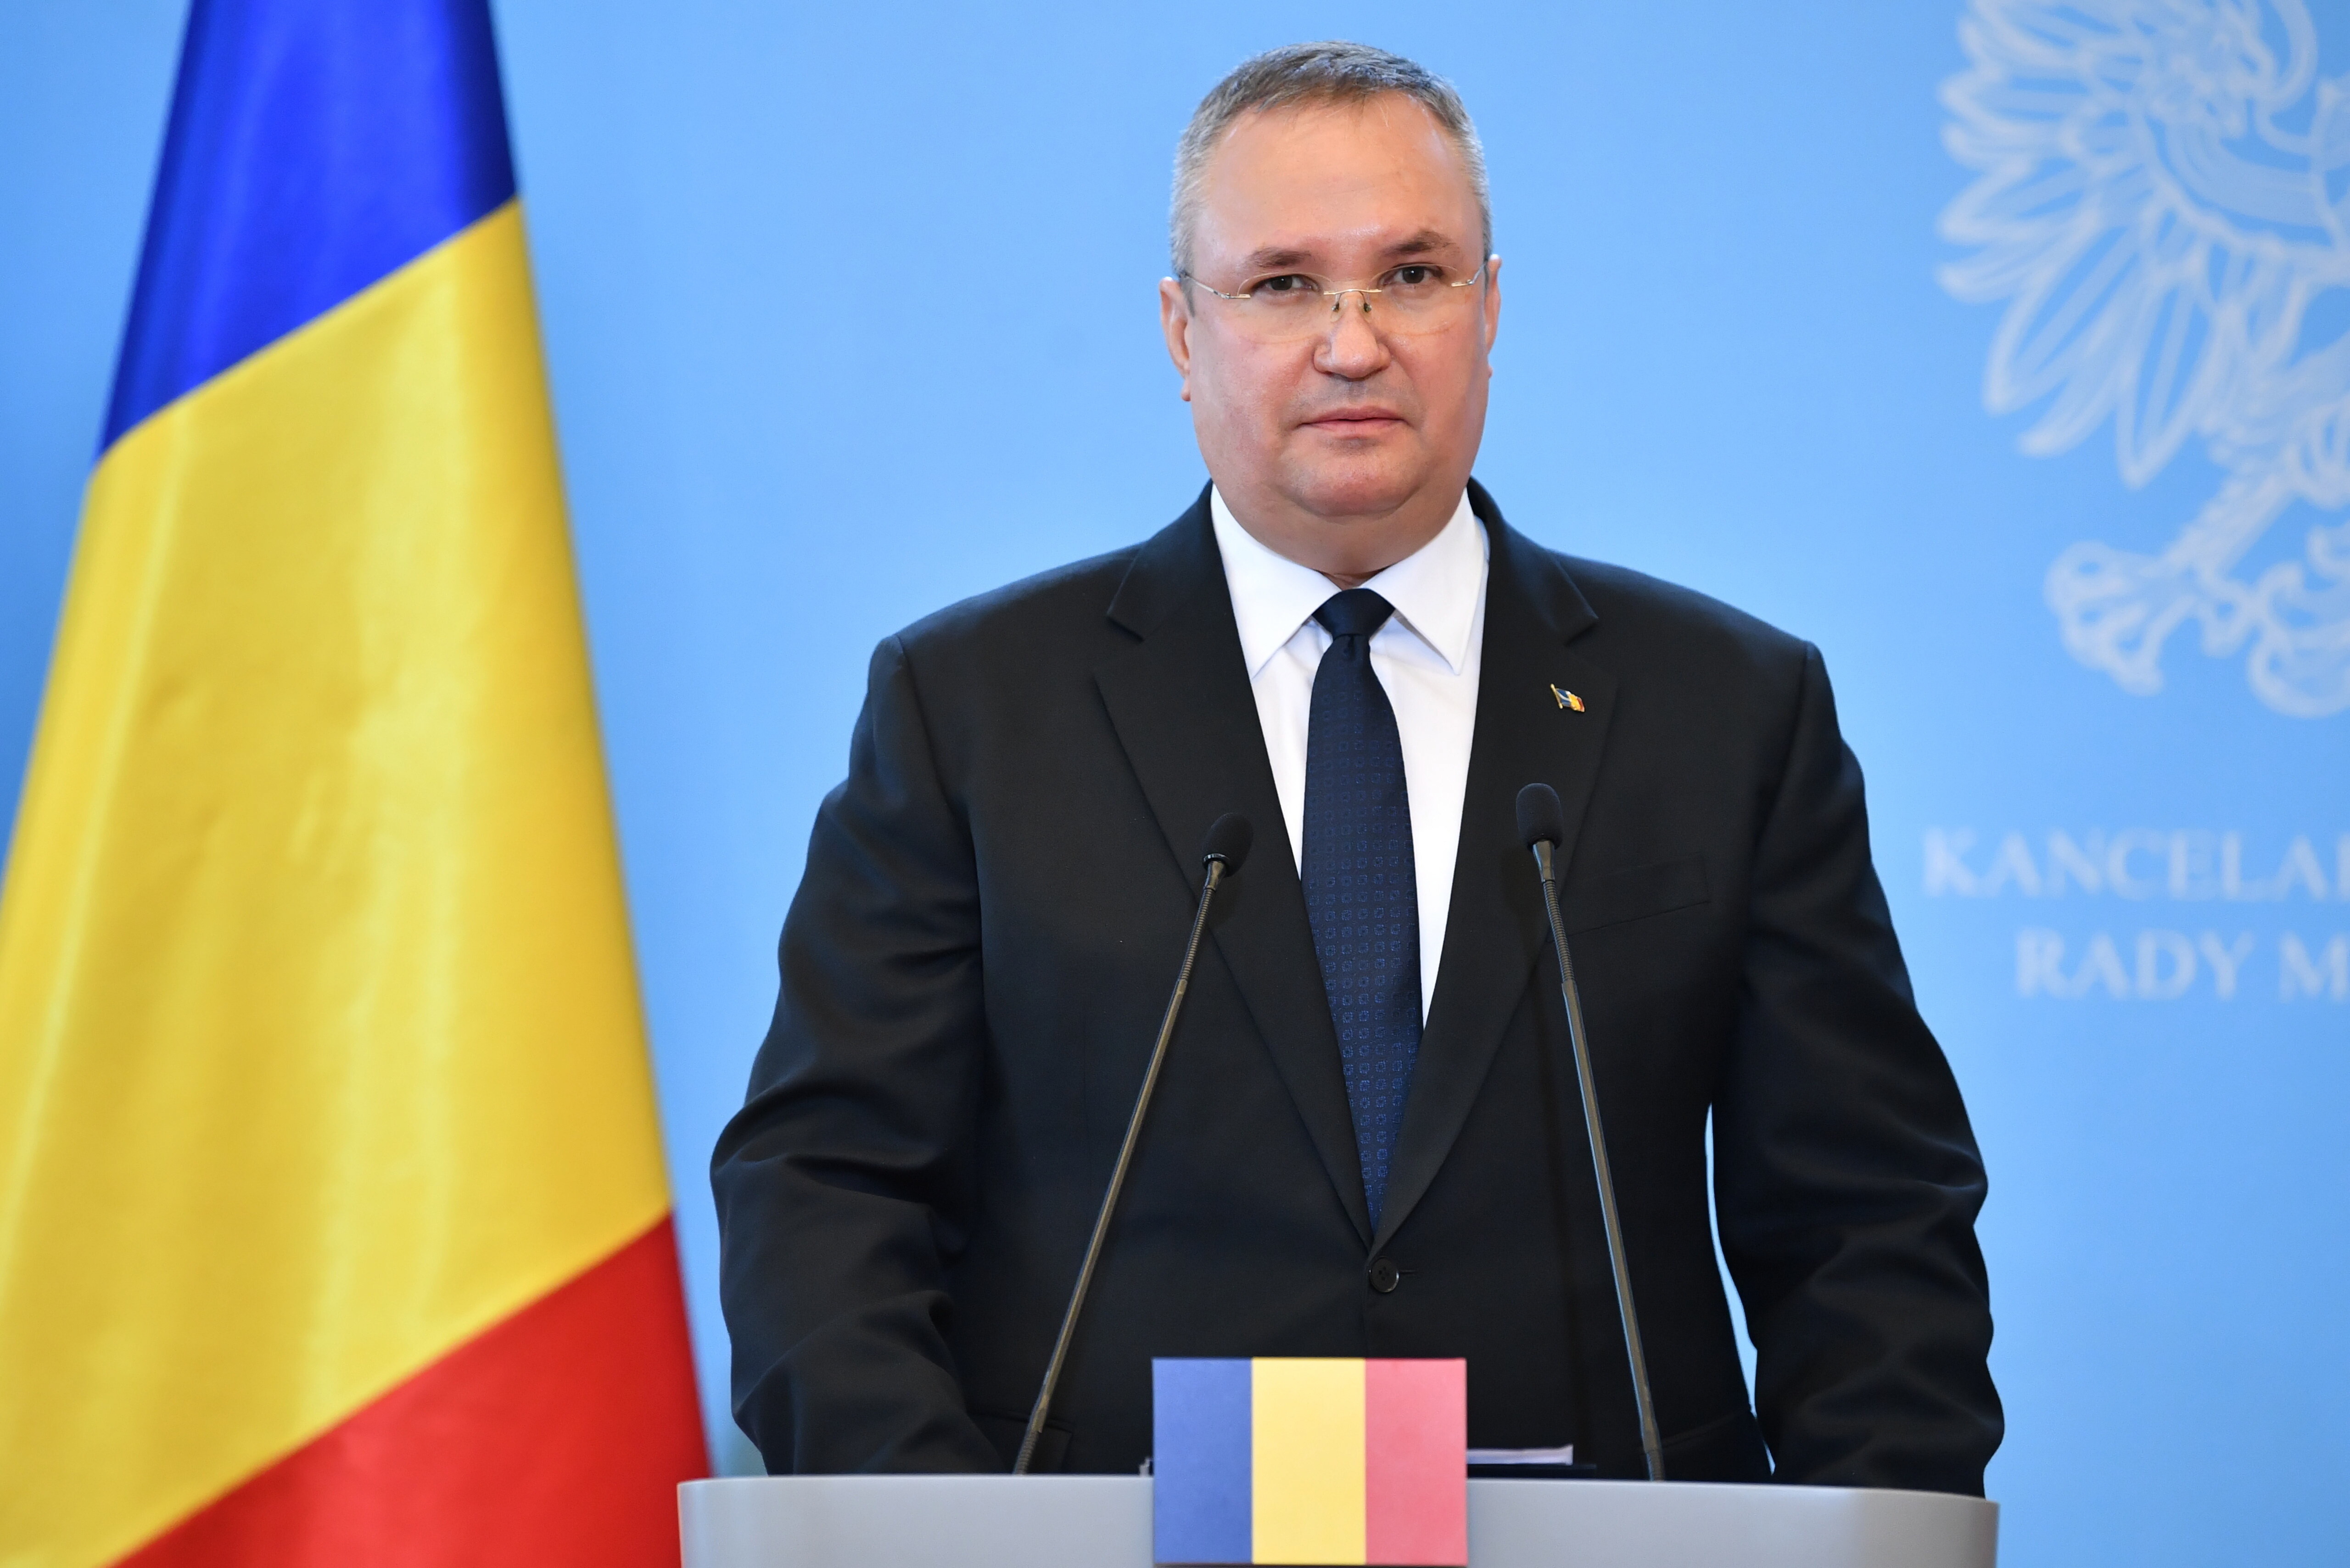 Nicolae Ciucă: Evaluarea şi remanierea miniştrilor sunt la latitudinea premierului